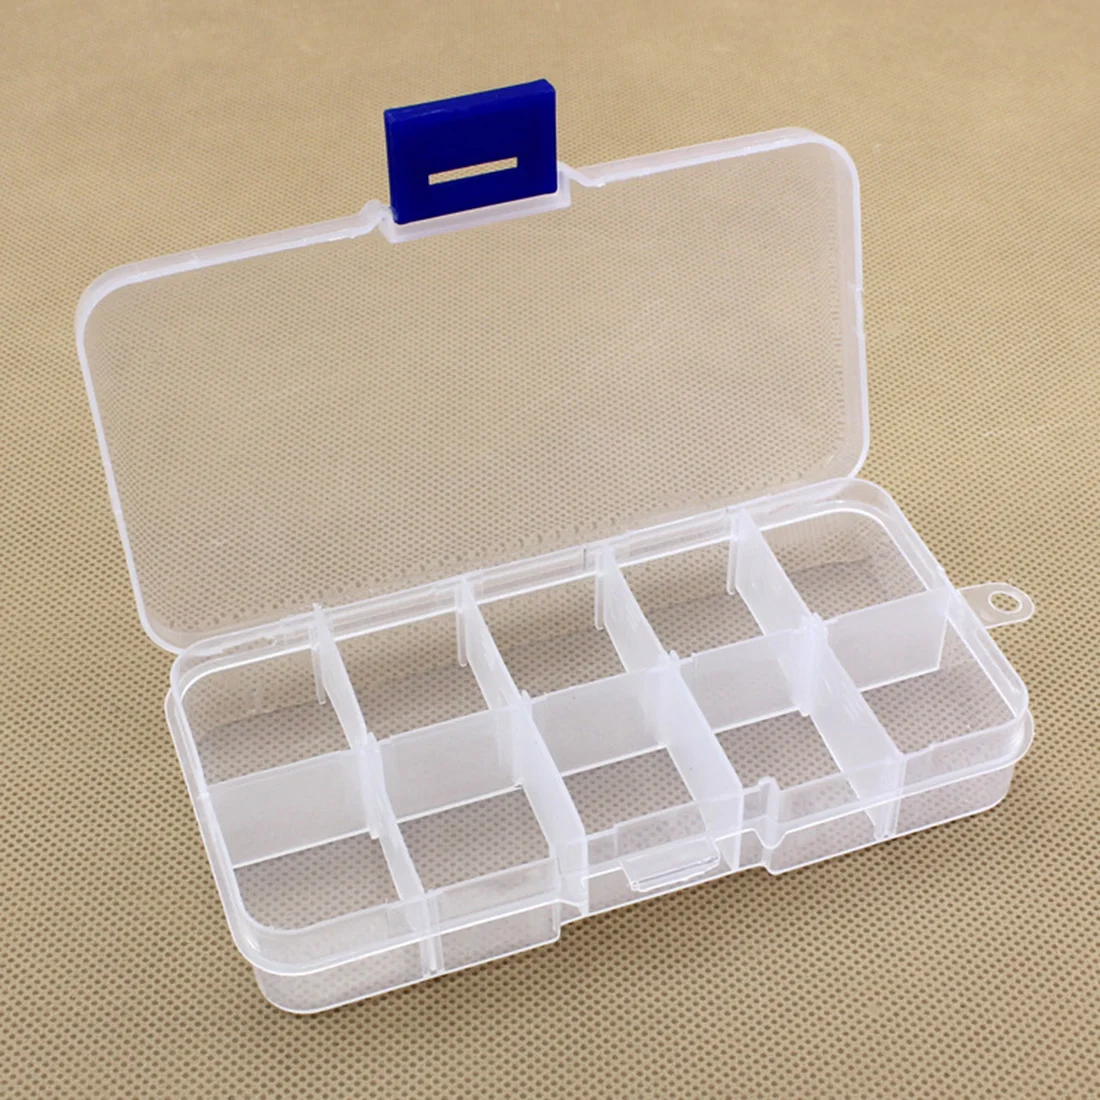 10 слотов Регулируемая прозрачная пластиковая коробка для хранения Чехол-контейнер органайзер для косметики ювелирные изделия бусины Швейные таблетки рыболовные снасти - Цвет: Синий